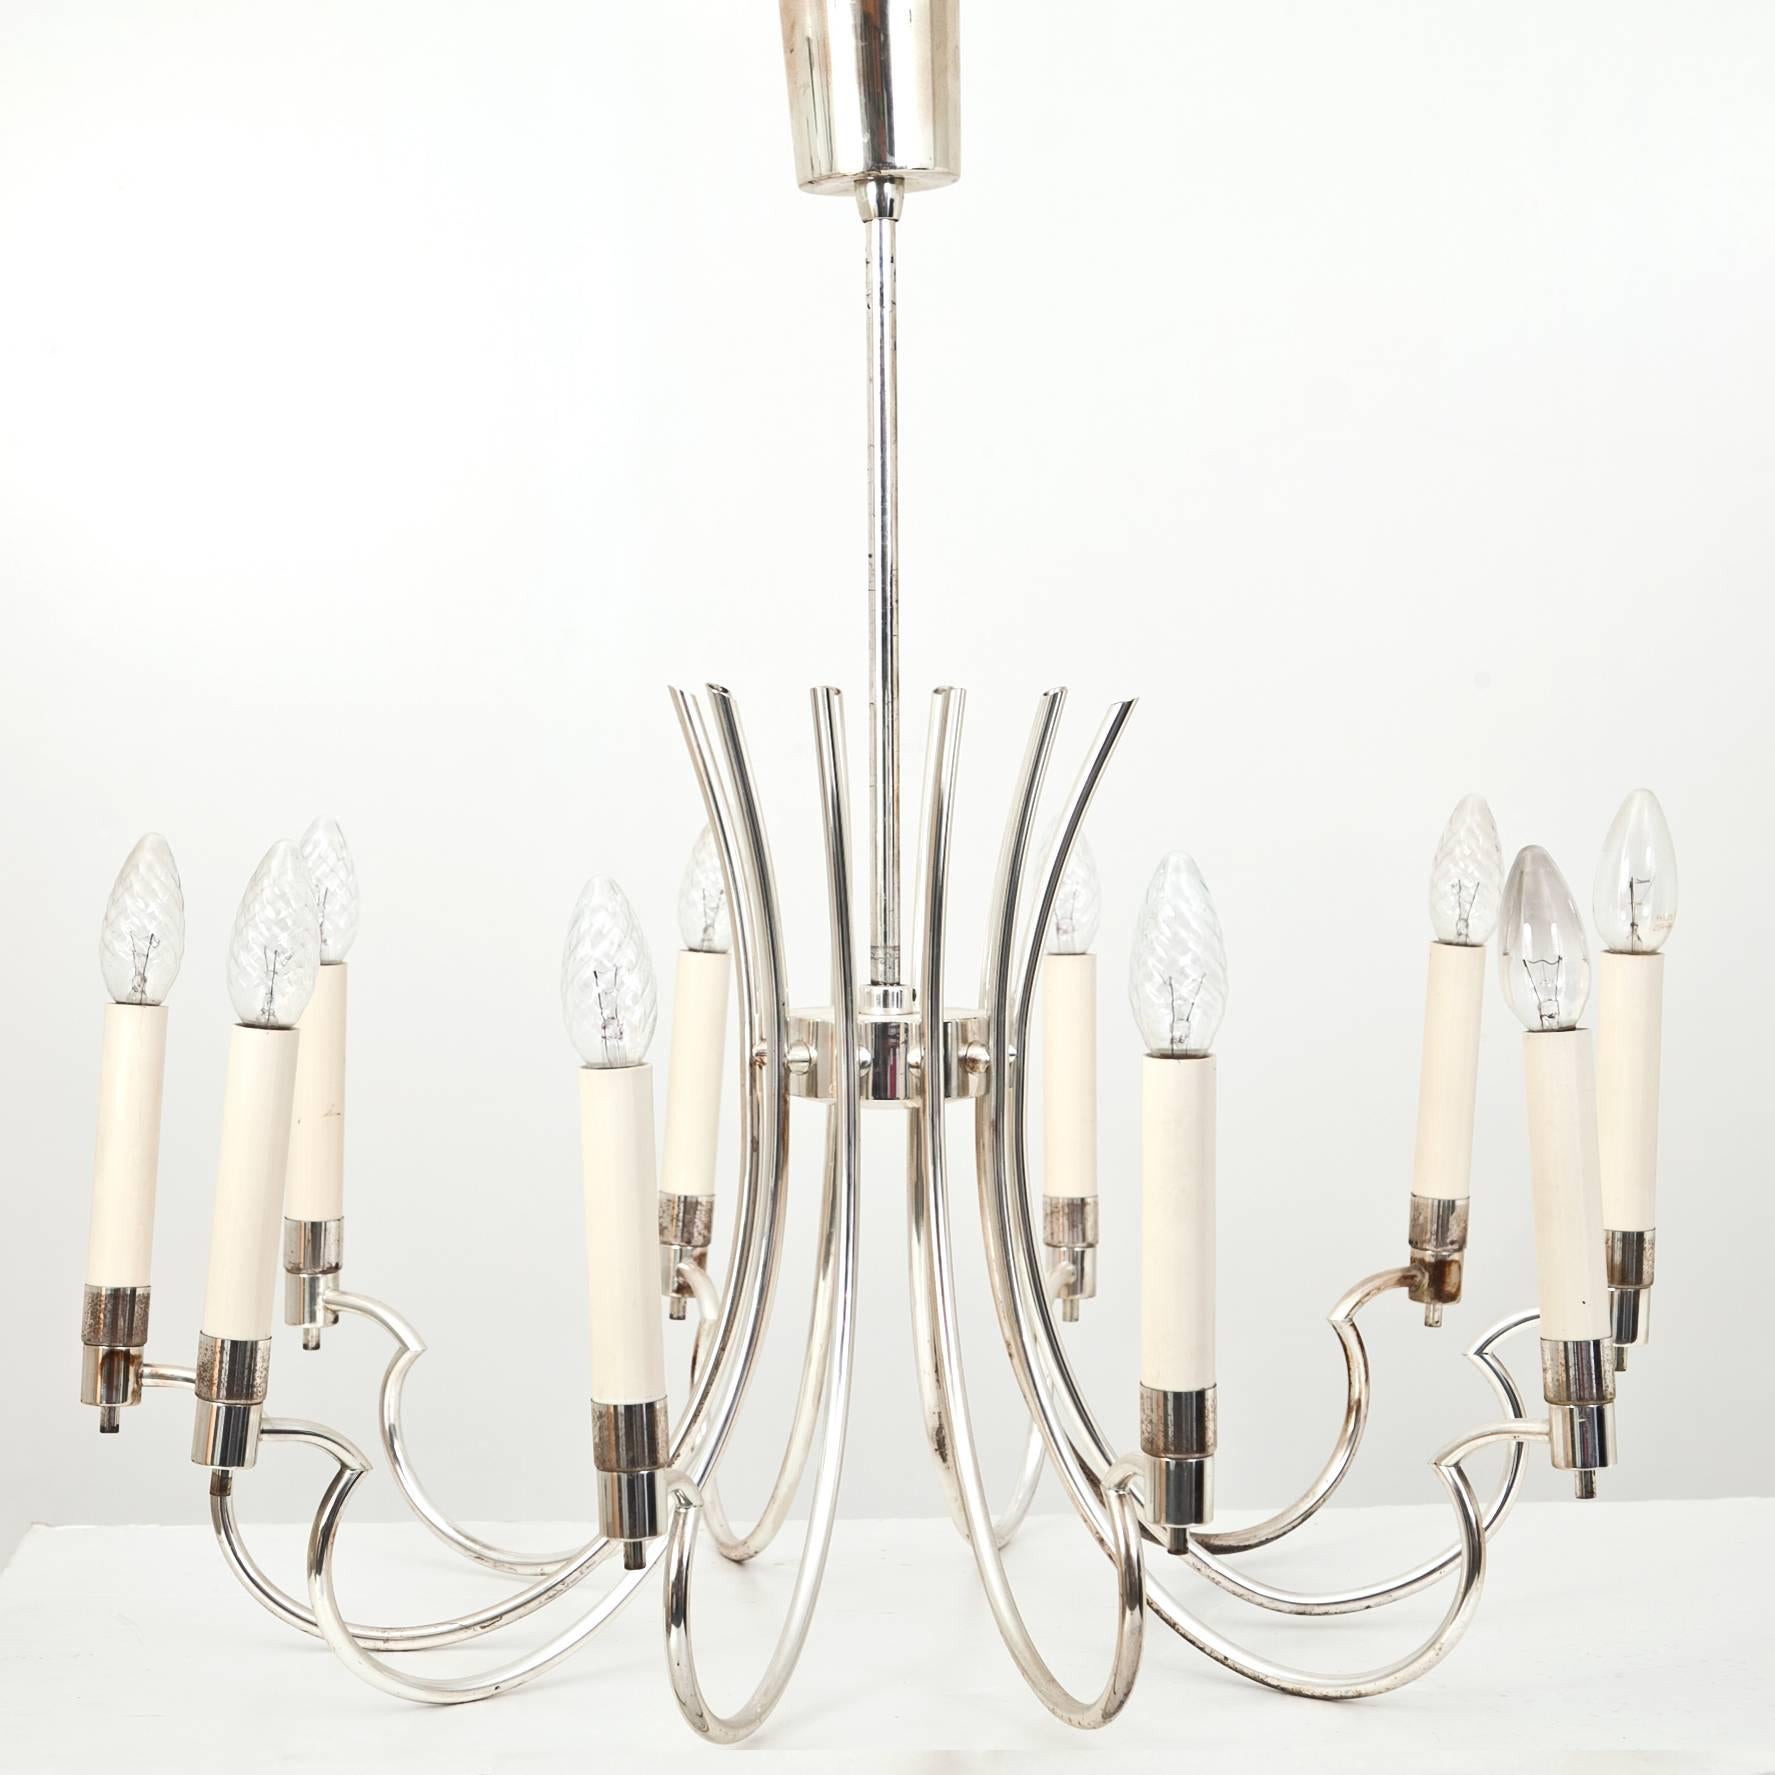 Silver plated Art Deco chandelier with ten arms by the 'Vereinigte Werkstätten', Munich.
 